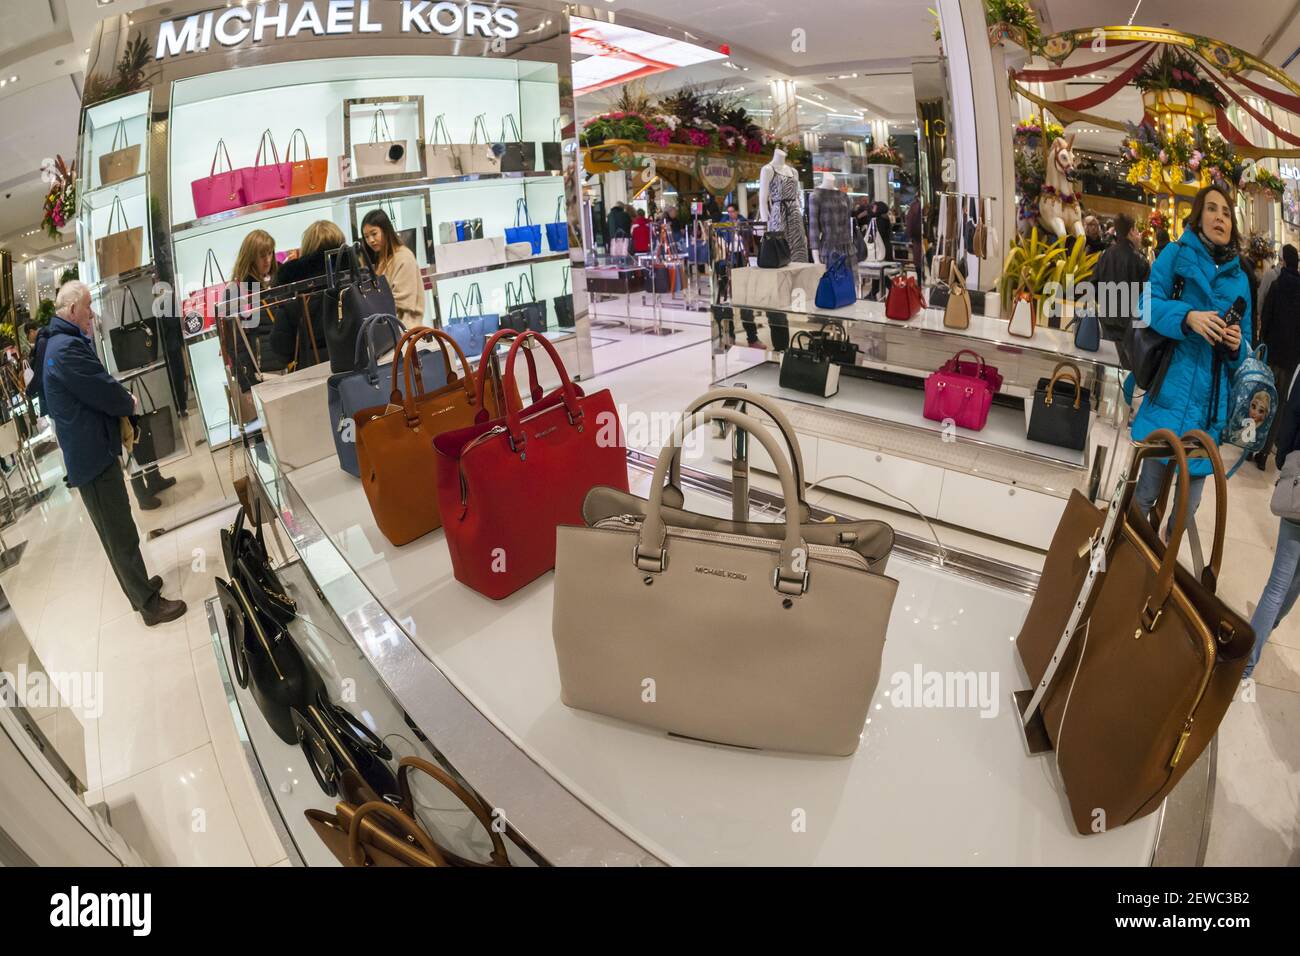 Domenica 26 marzo 2017, gli acquirenti sfogliano le borse Michael Kors nel  negozio principale di Macy's Herald Square. (Foto di Richard B. Levine Foto  stock - Alamy